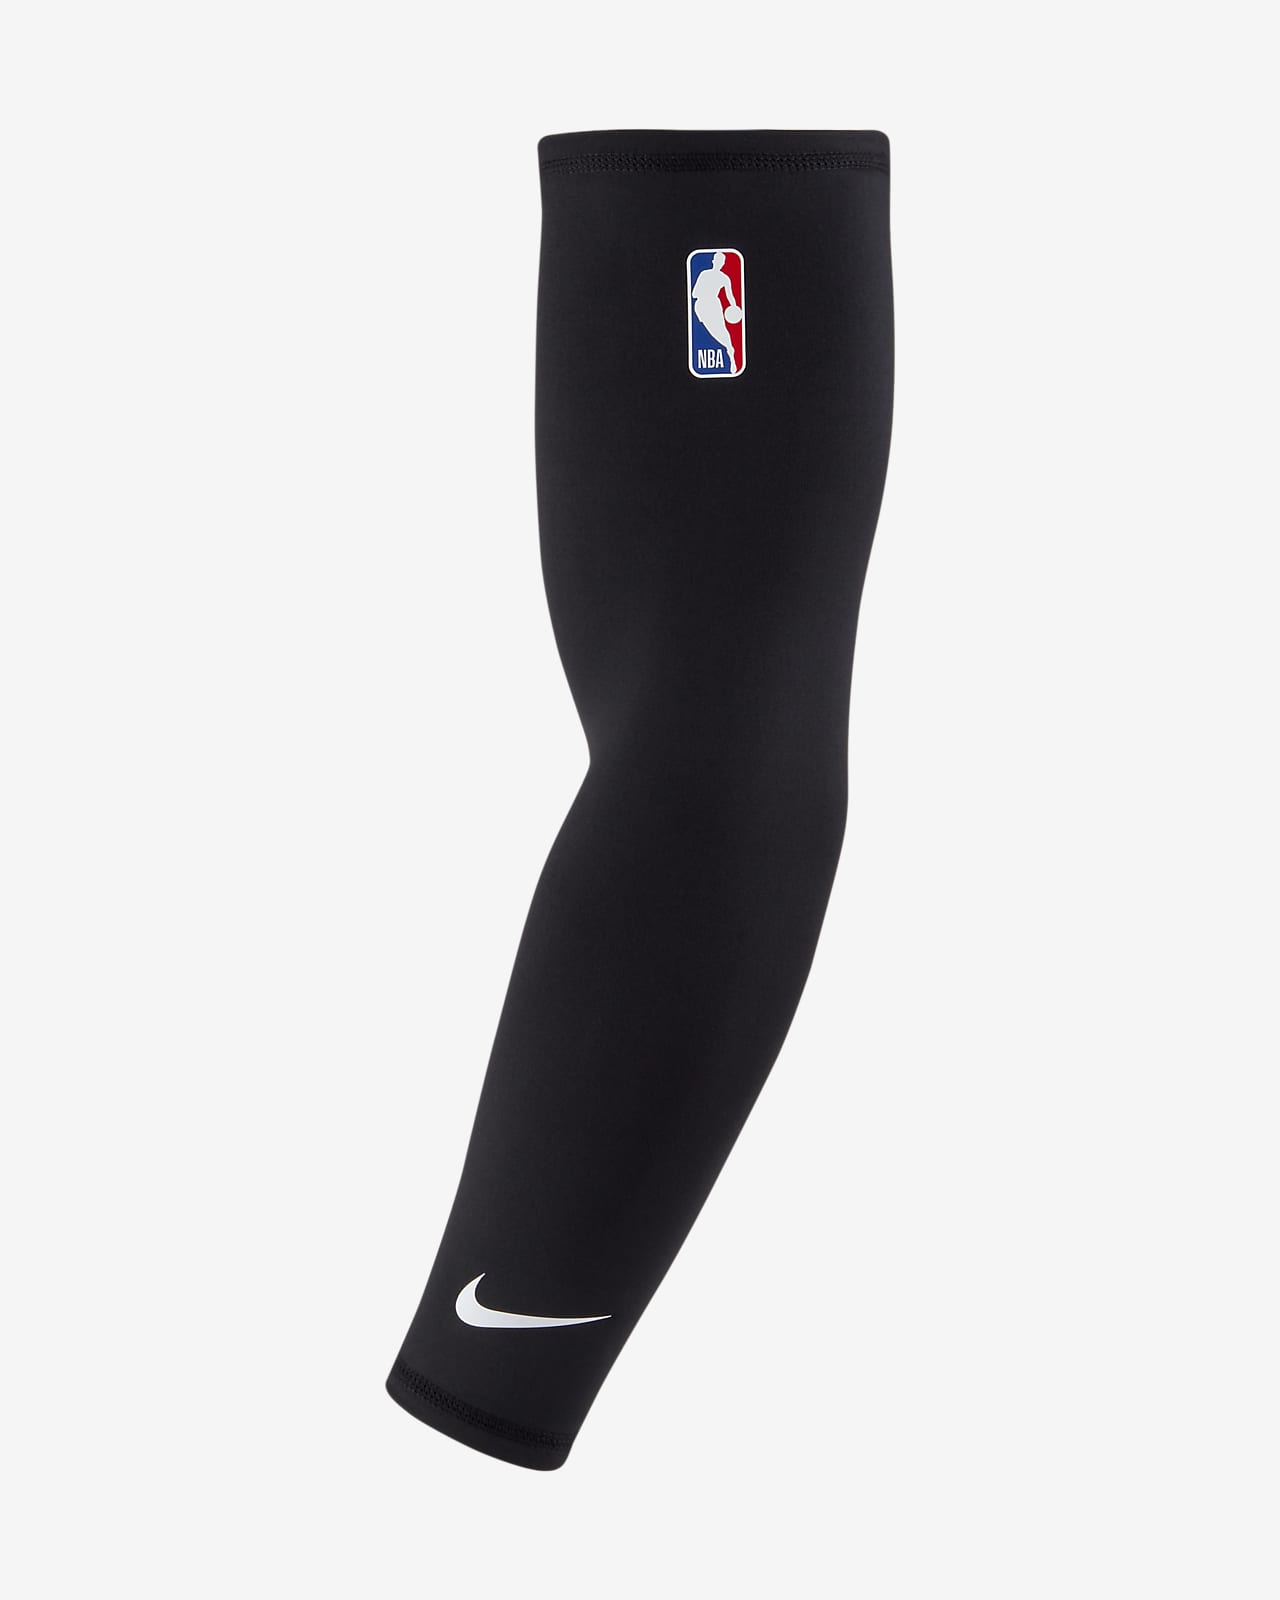 Μανίκι μπάσκετ NBA Nike